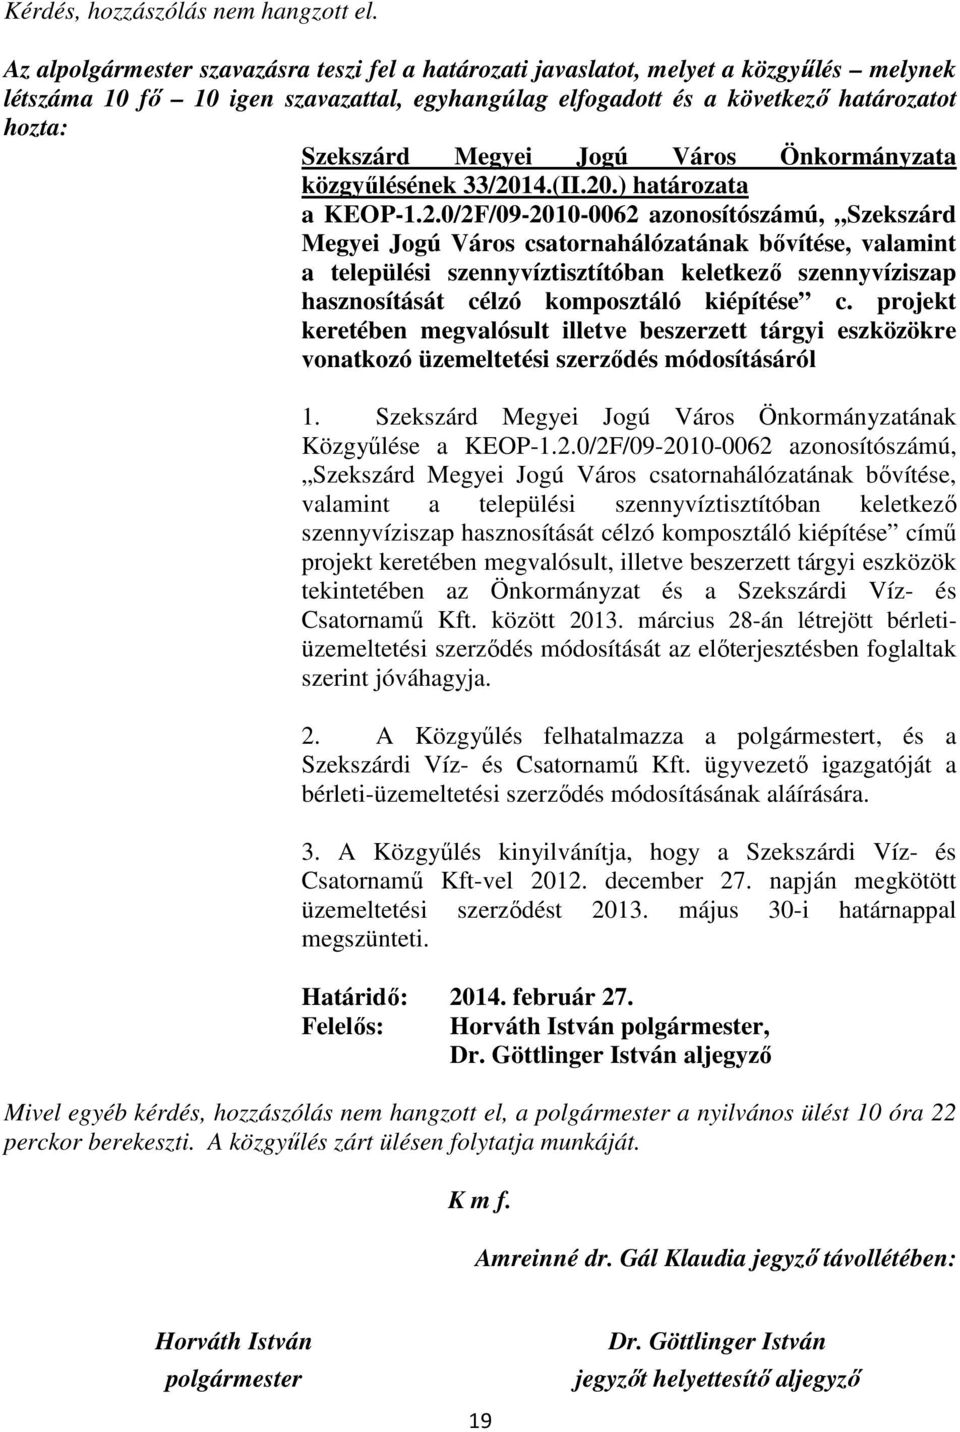 33/2014.(II.20.) határozata a KEOP-1.2.0/2F/09-2010-0062 azonosítószámú, Szekszárd Megyei Jogú Város csatornahálózatának bıvítése, valamint a települési szennyvíztisztítóban keletkezı szennyvíziszap